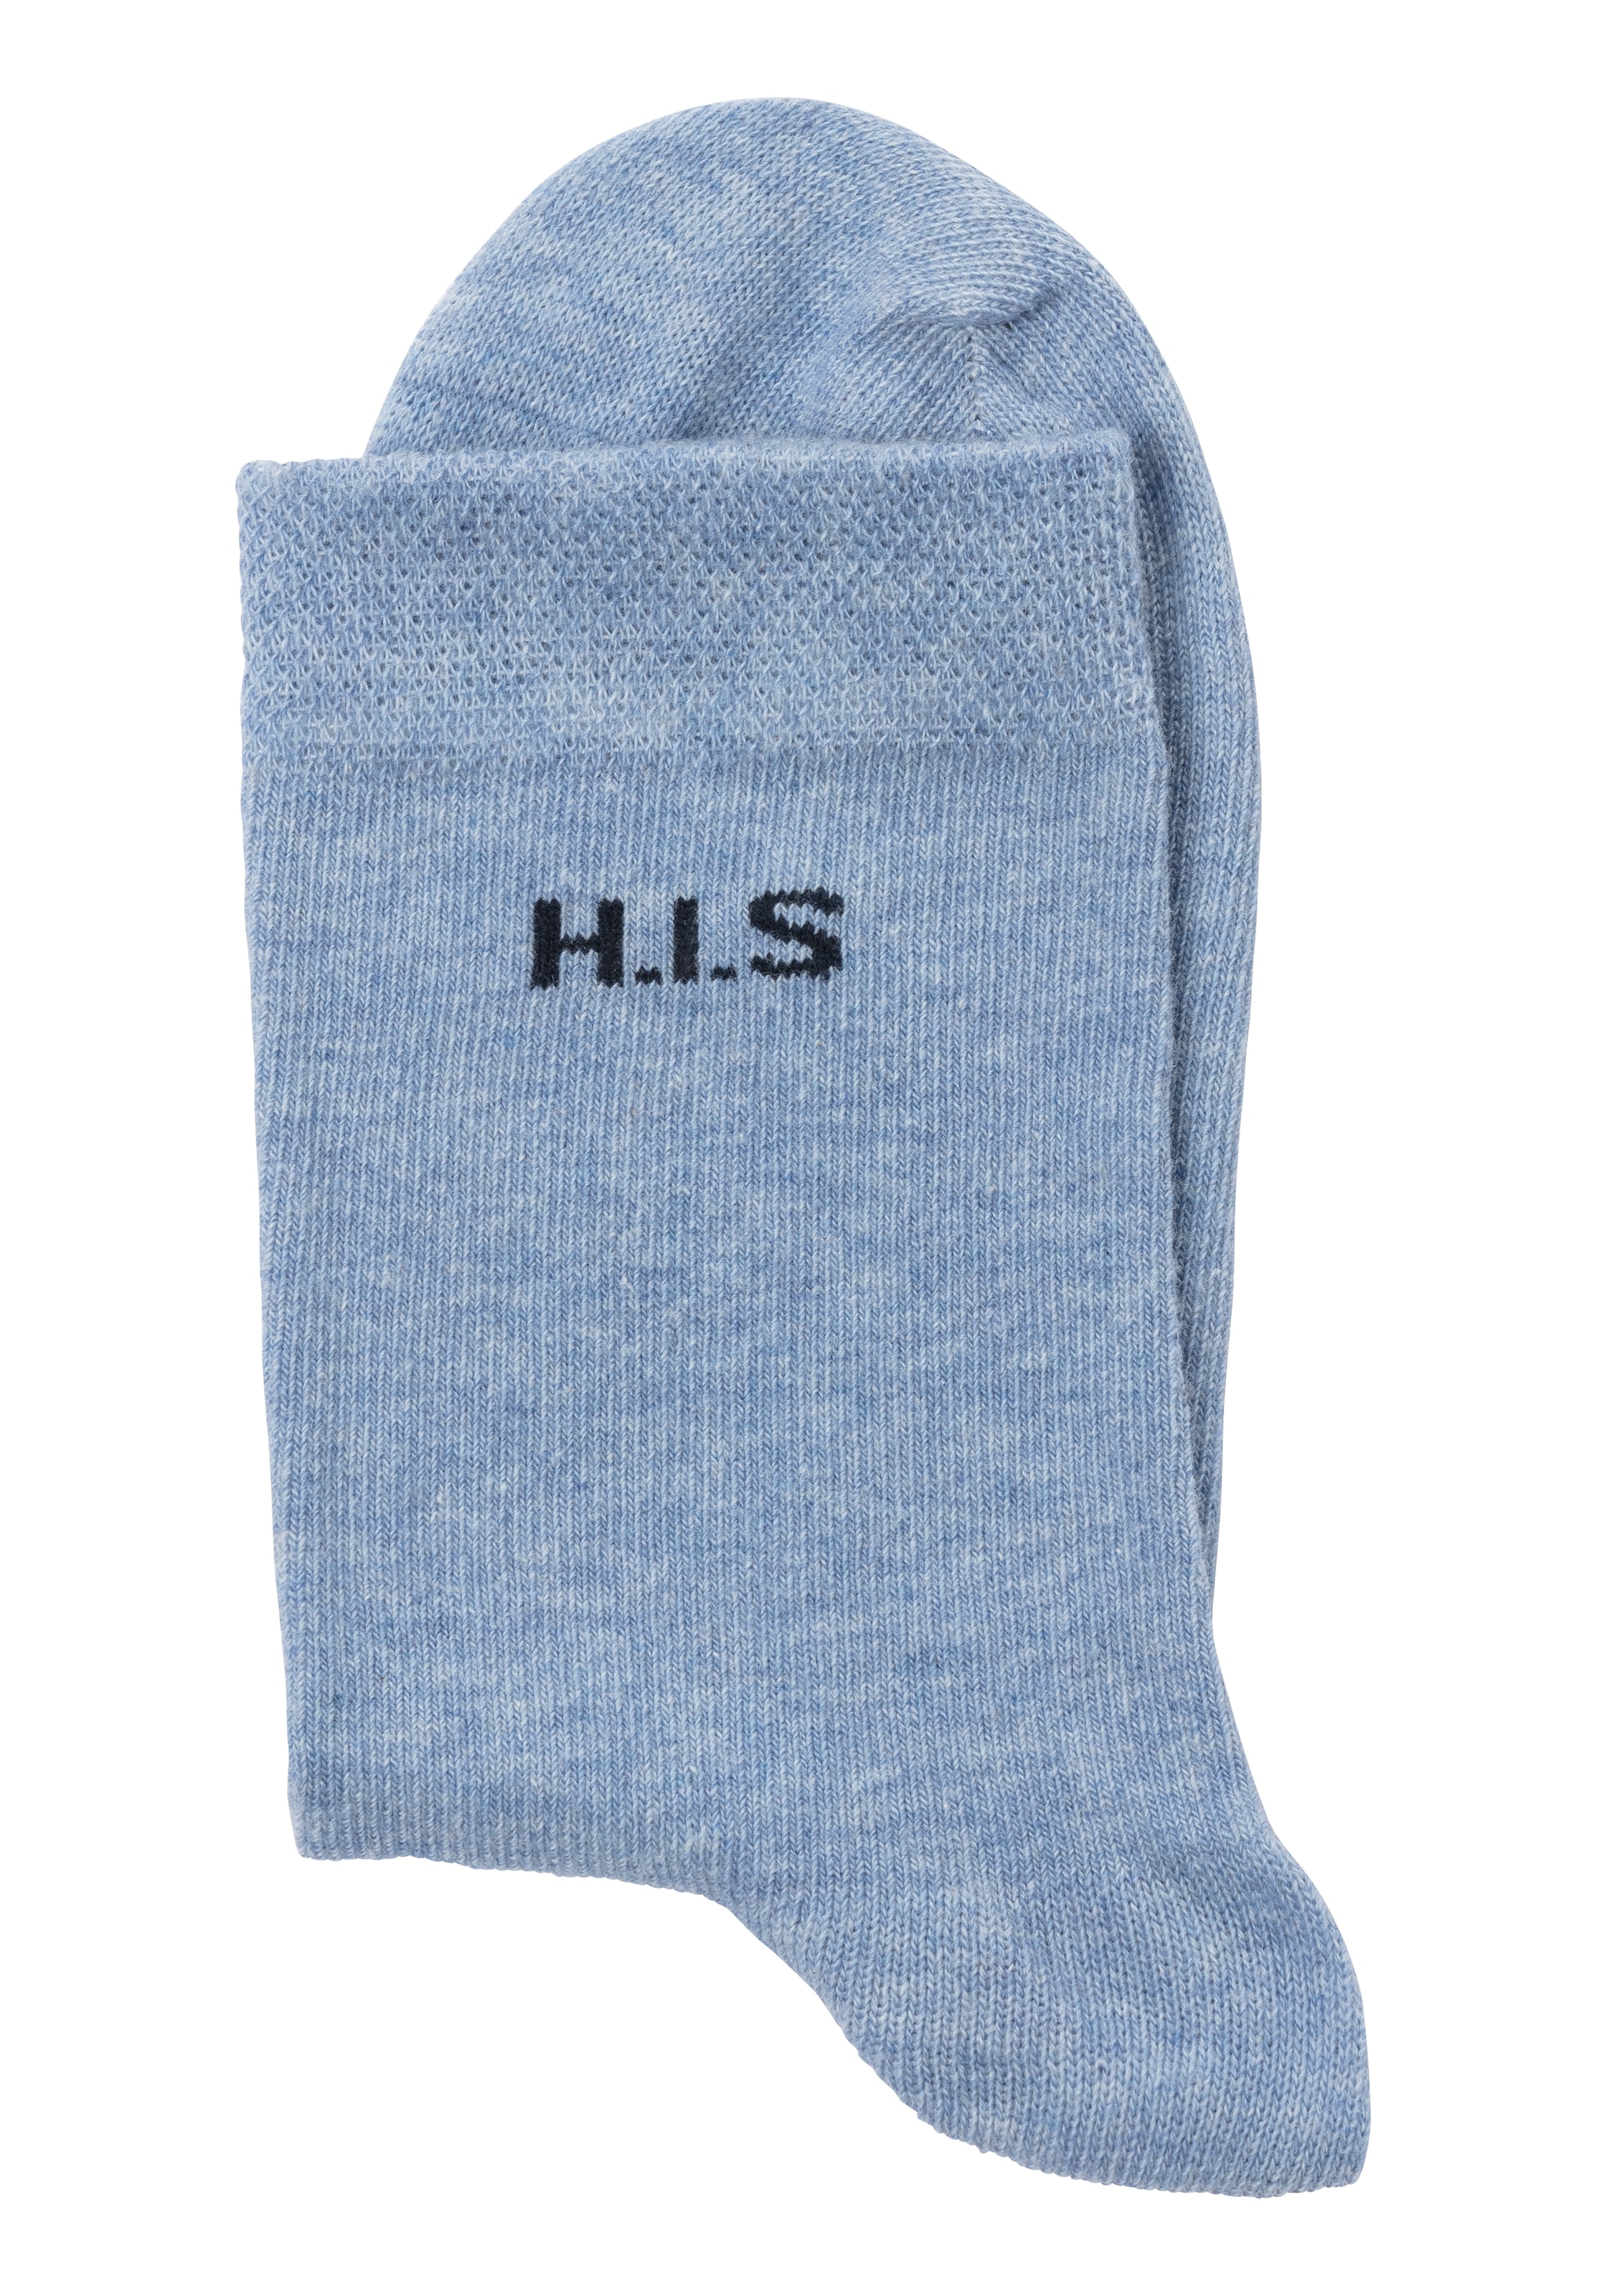 H.I.S Socken, (4 Paar), einschneidendes Bündchen ohne Raten kaufen auf